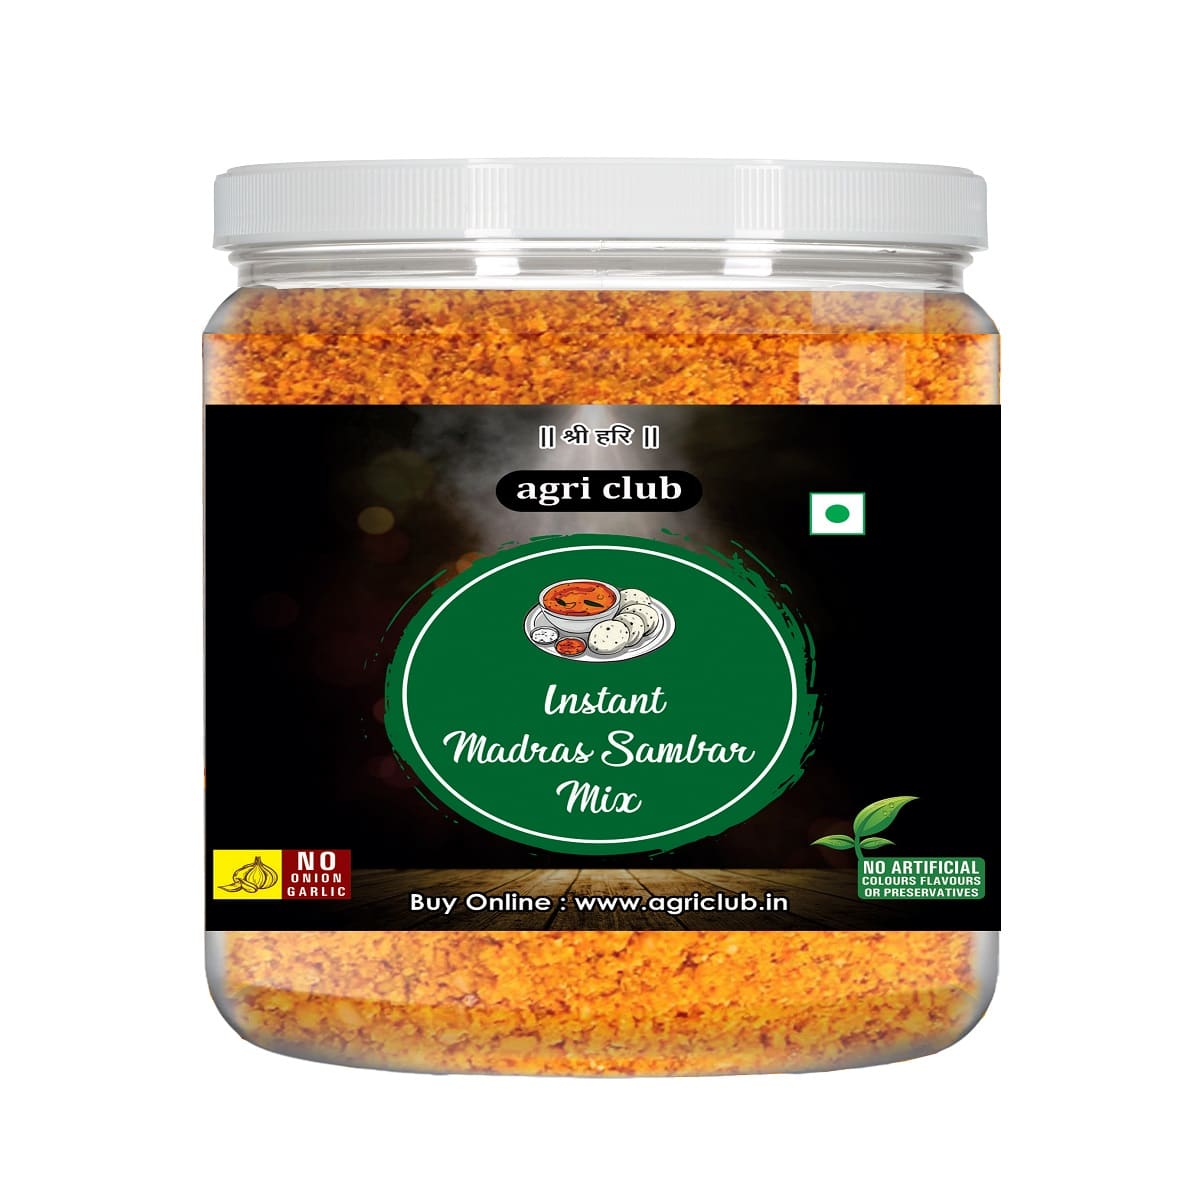 Instant Madrasi Sambar Mix 100% Natural 200 Gm